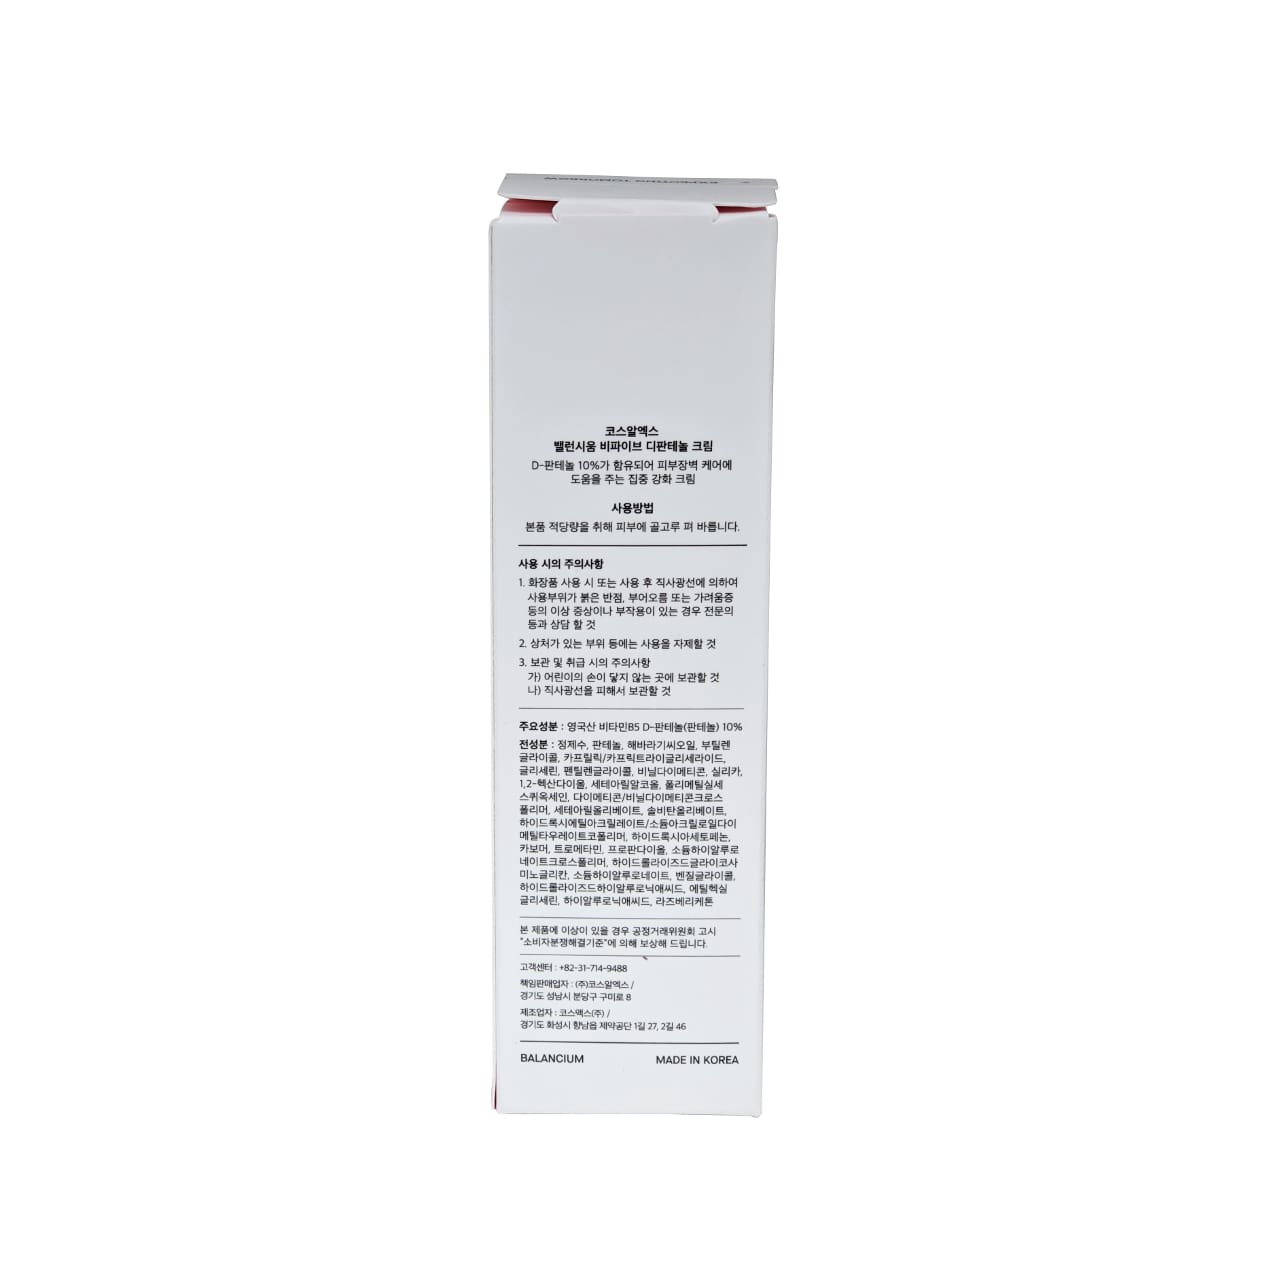 Product details for COSRX Balancium B5 D-Panthenol Cream in Korean 1